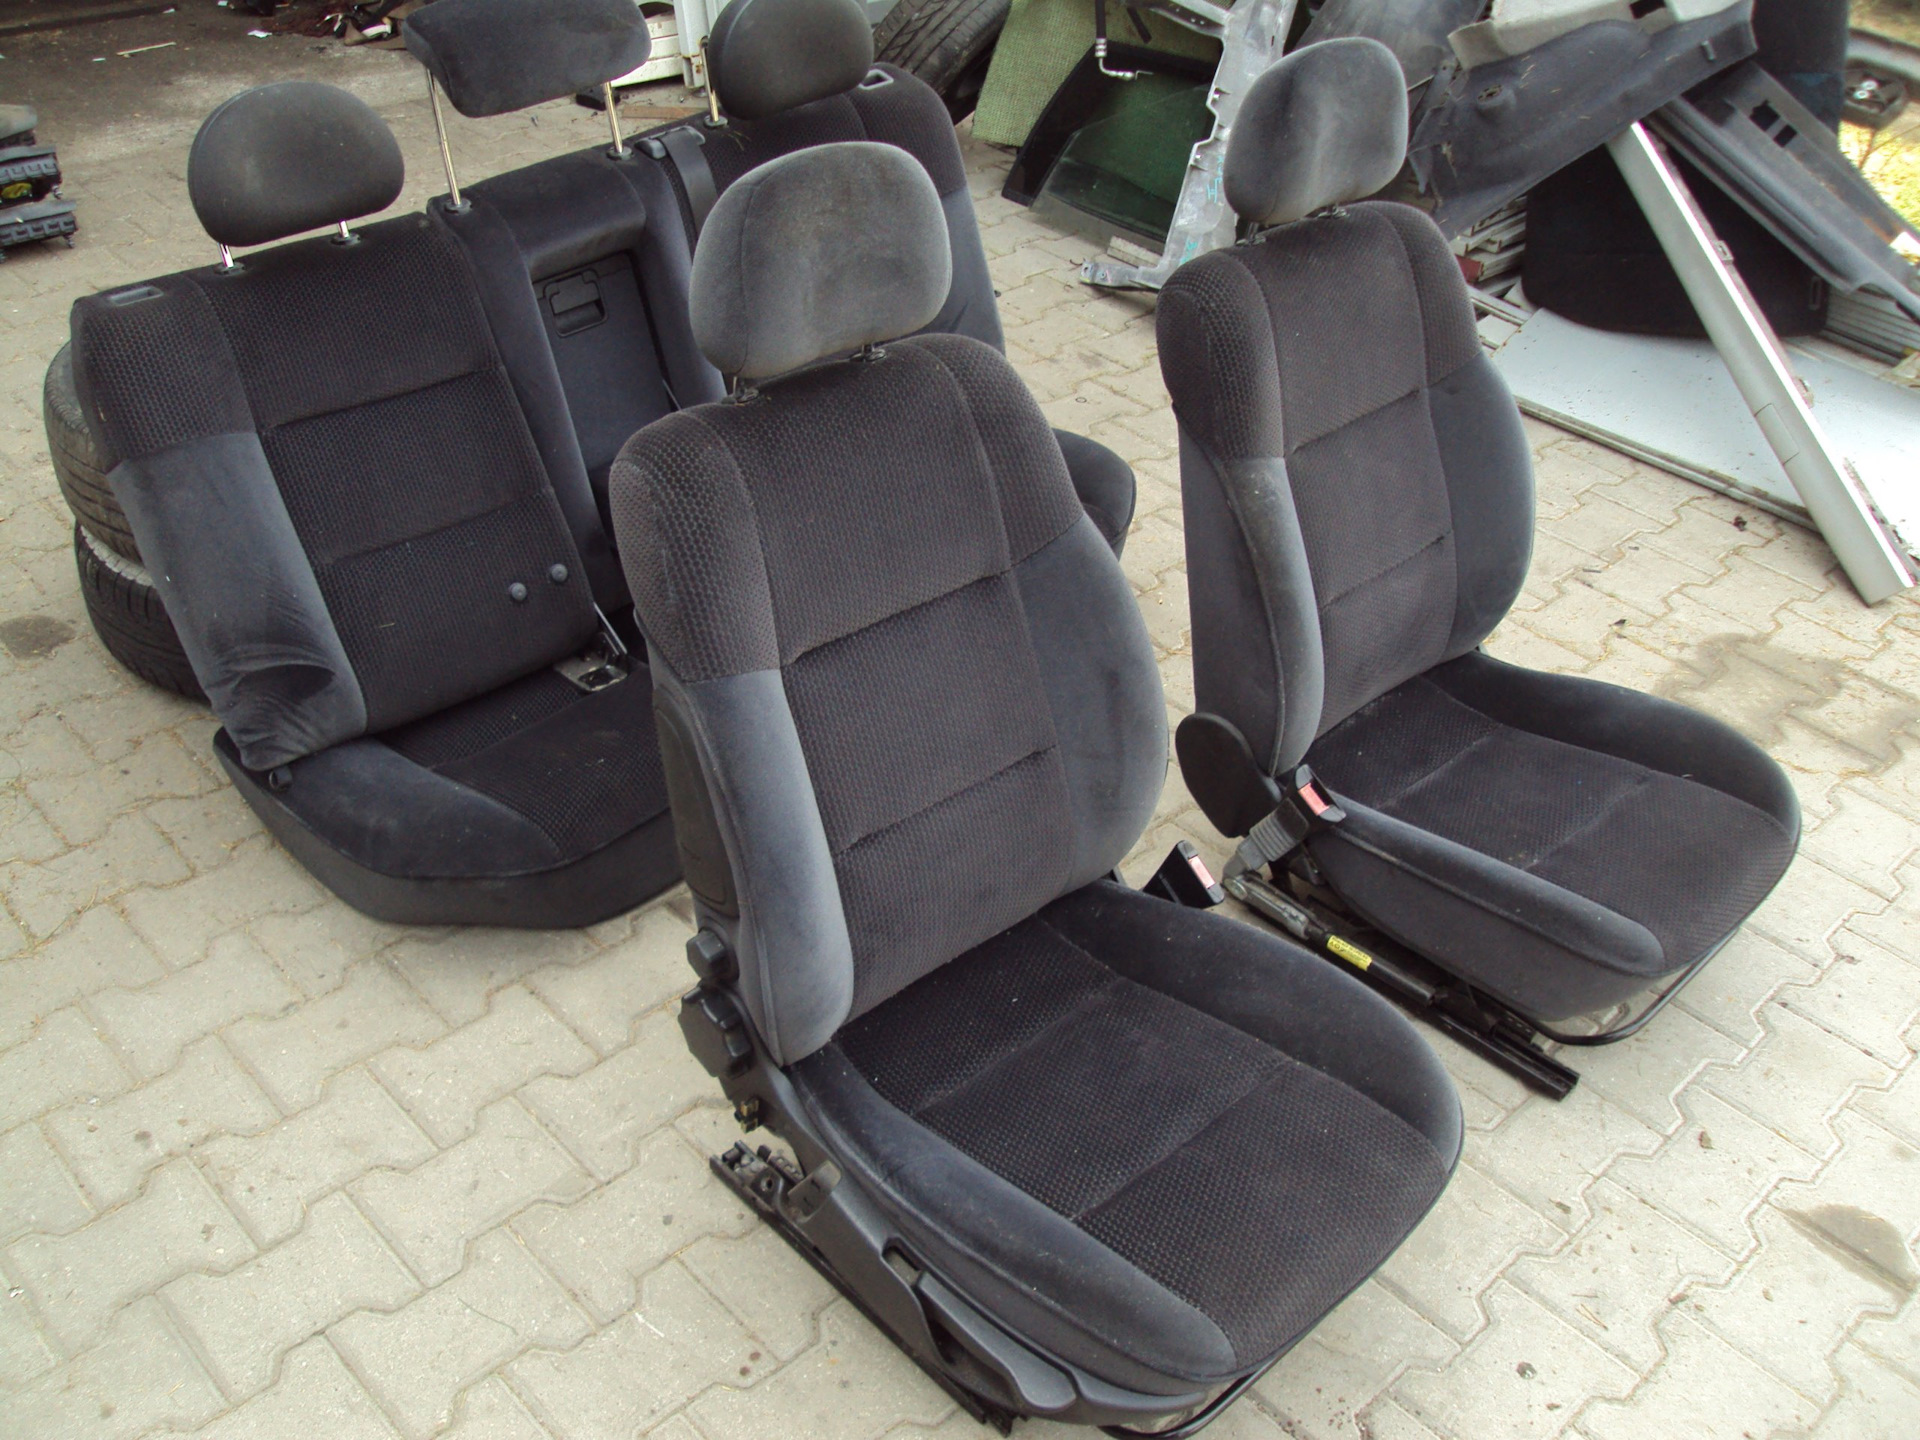 Сиденья вектра б. Opel Vectra b сиденья. Сиденья Опель Вектра. Opel Omega b 1998 сиденья. Opel Vectra a сидений.